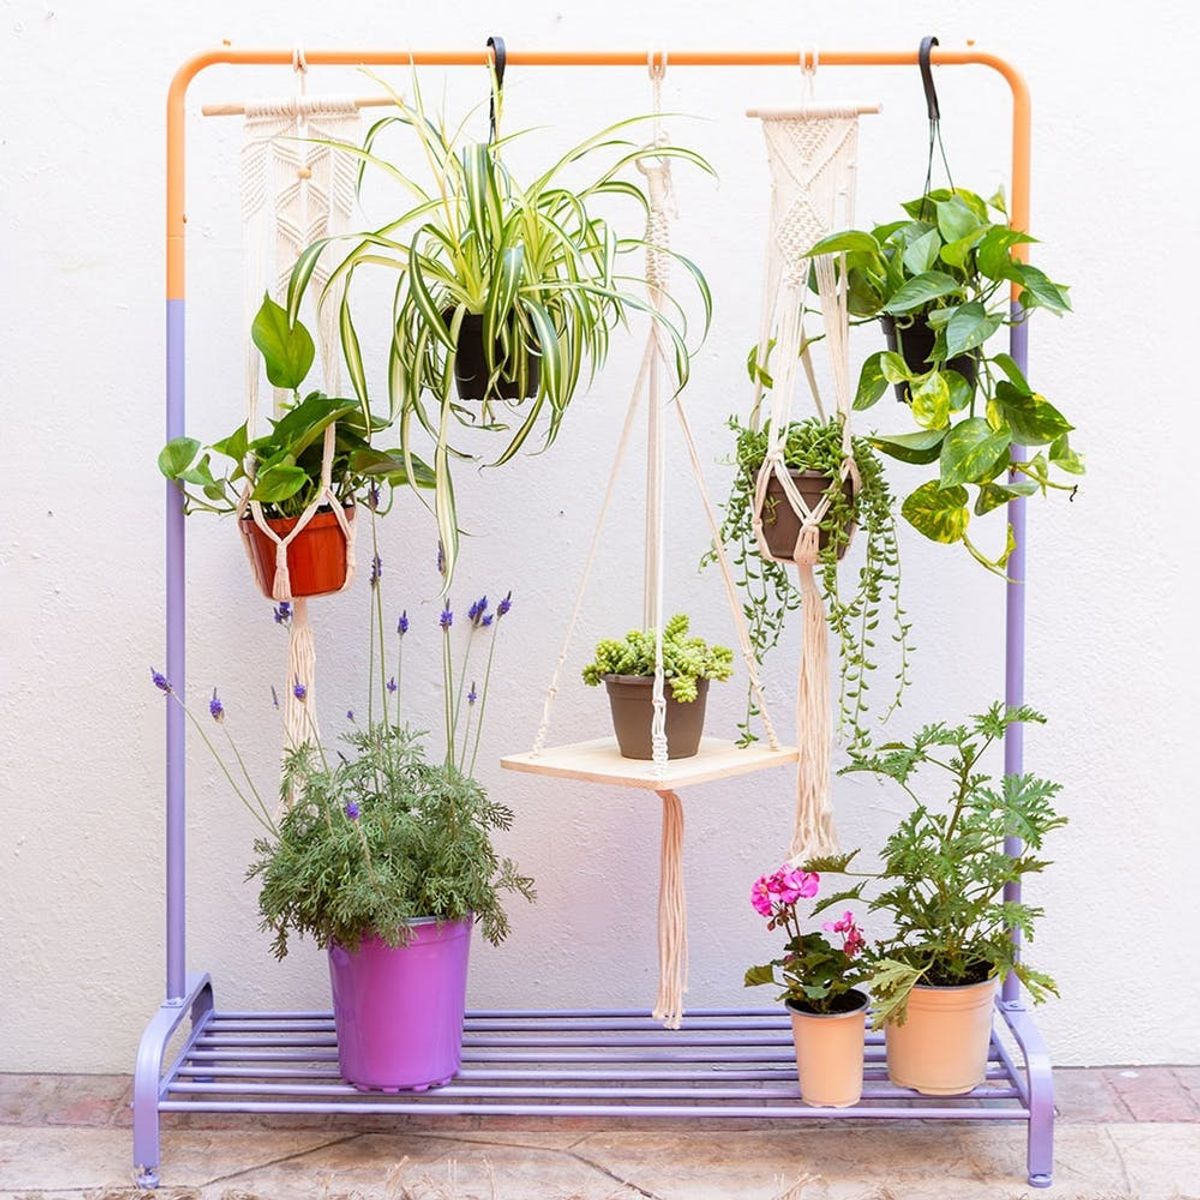 turn a clothing rack into a vertical garden